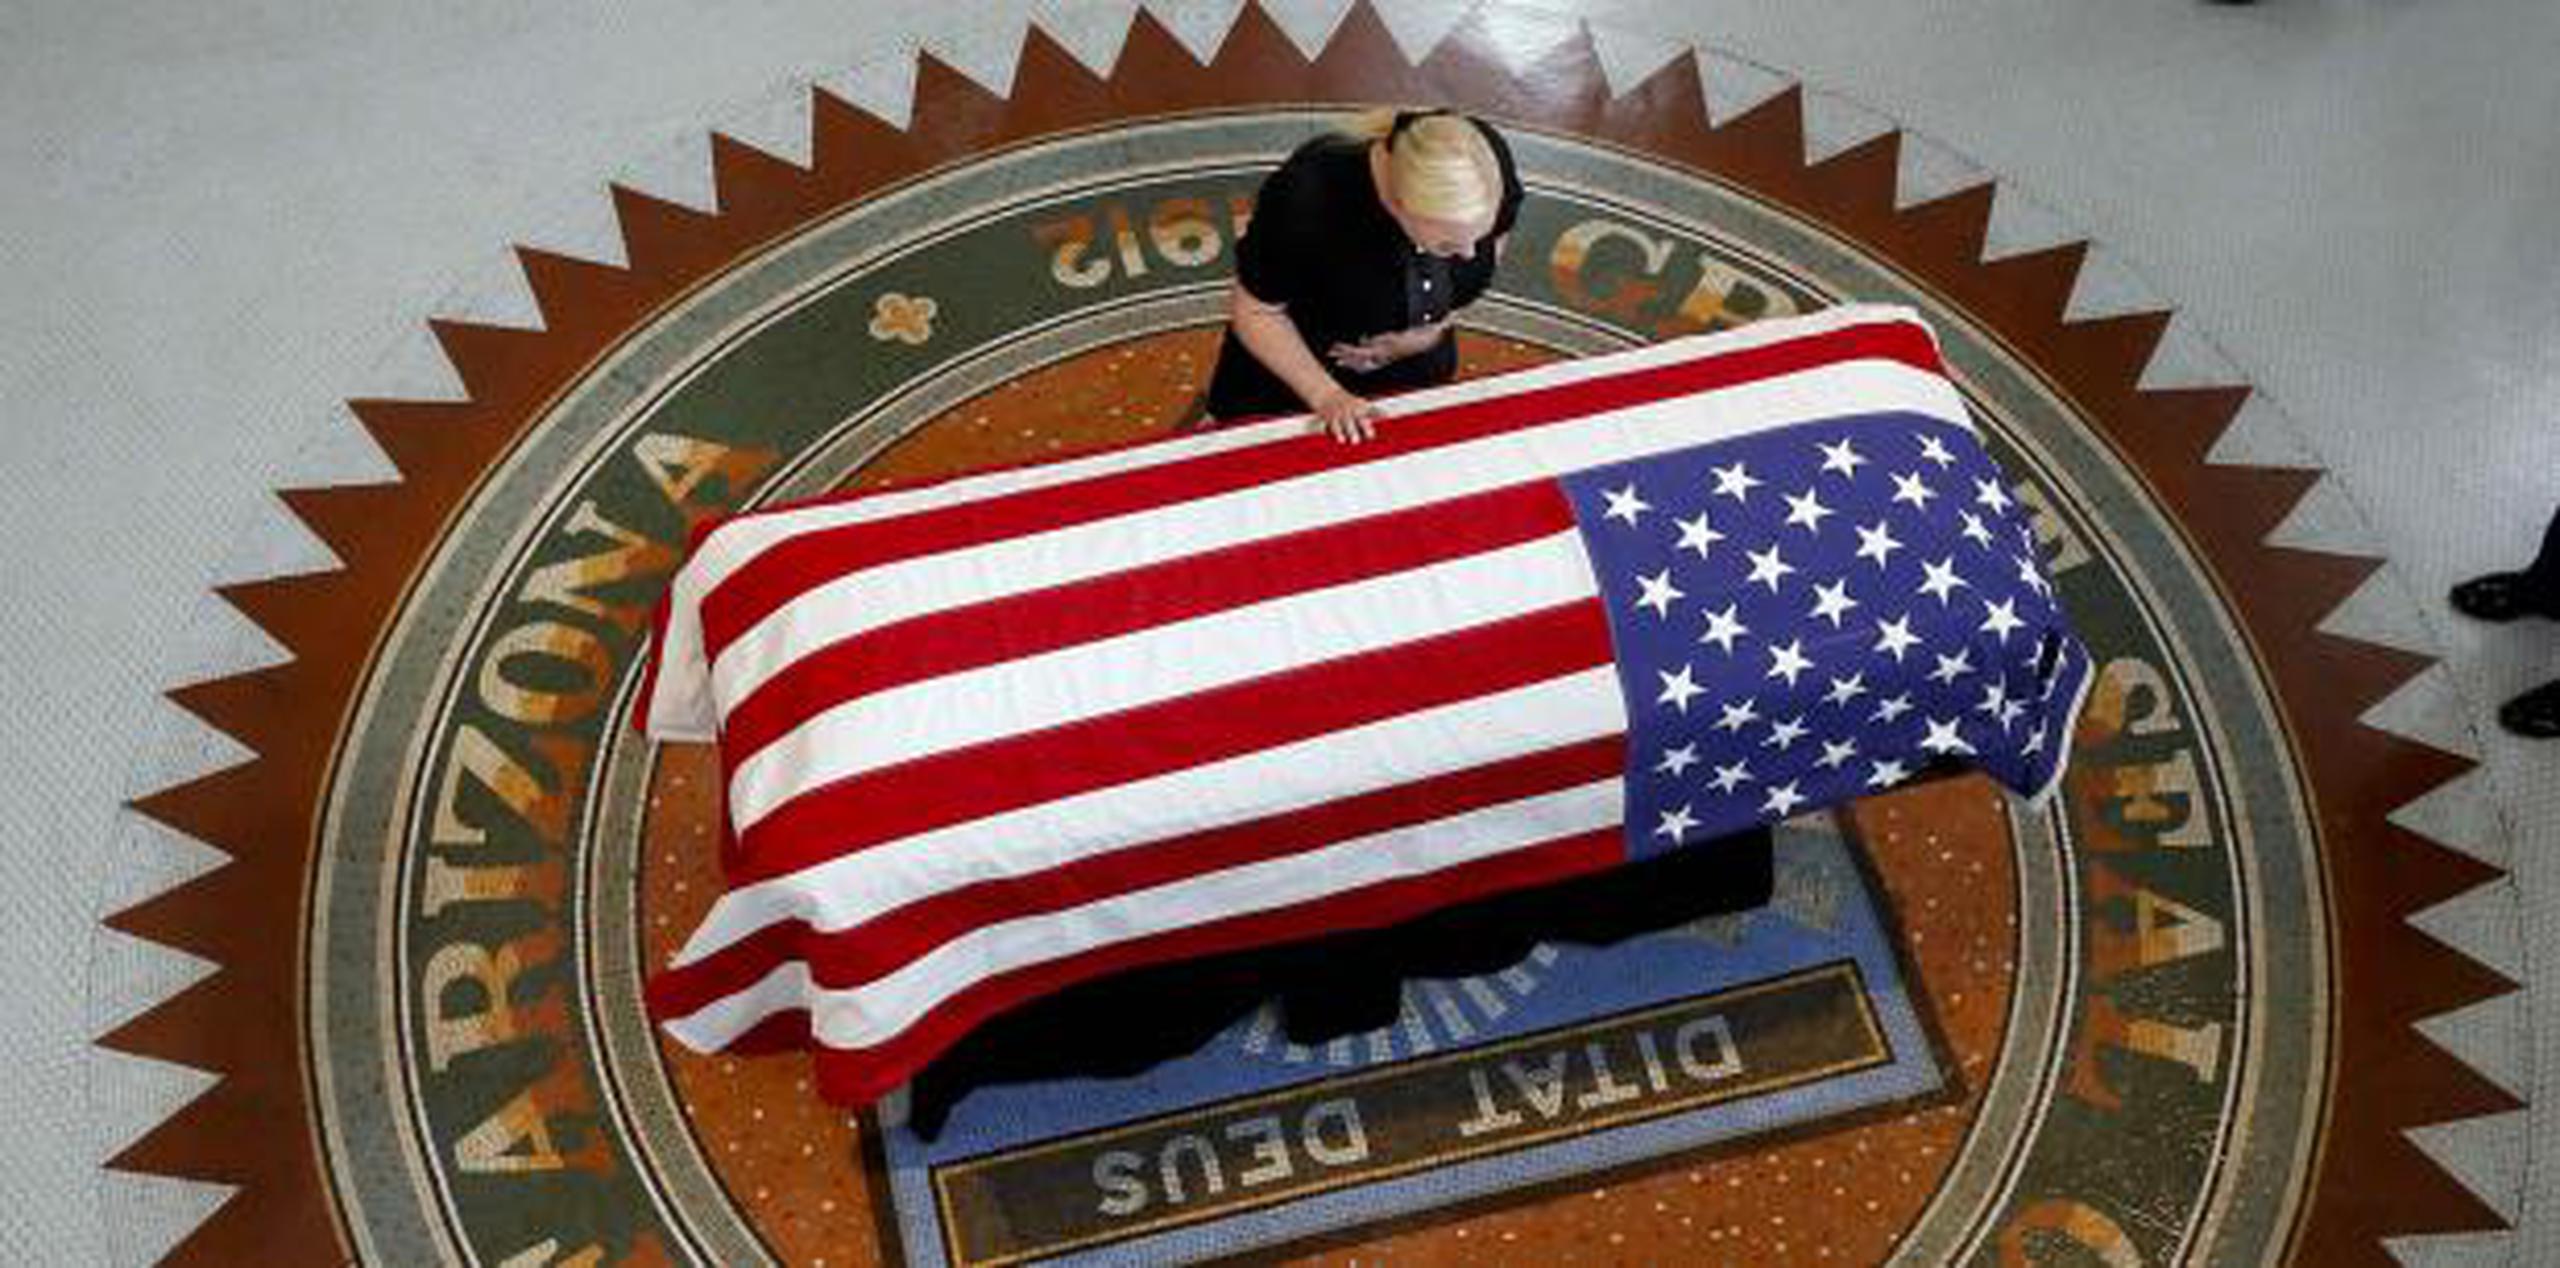 Meghan McCain, hija del senador John McCain, toca el féretro durante un servicio fúnebre en el Capitolio de Arizona. (AP / Ross D. Franklin, Pool)